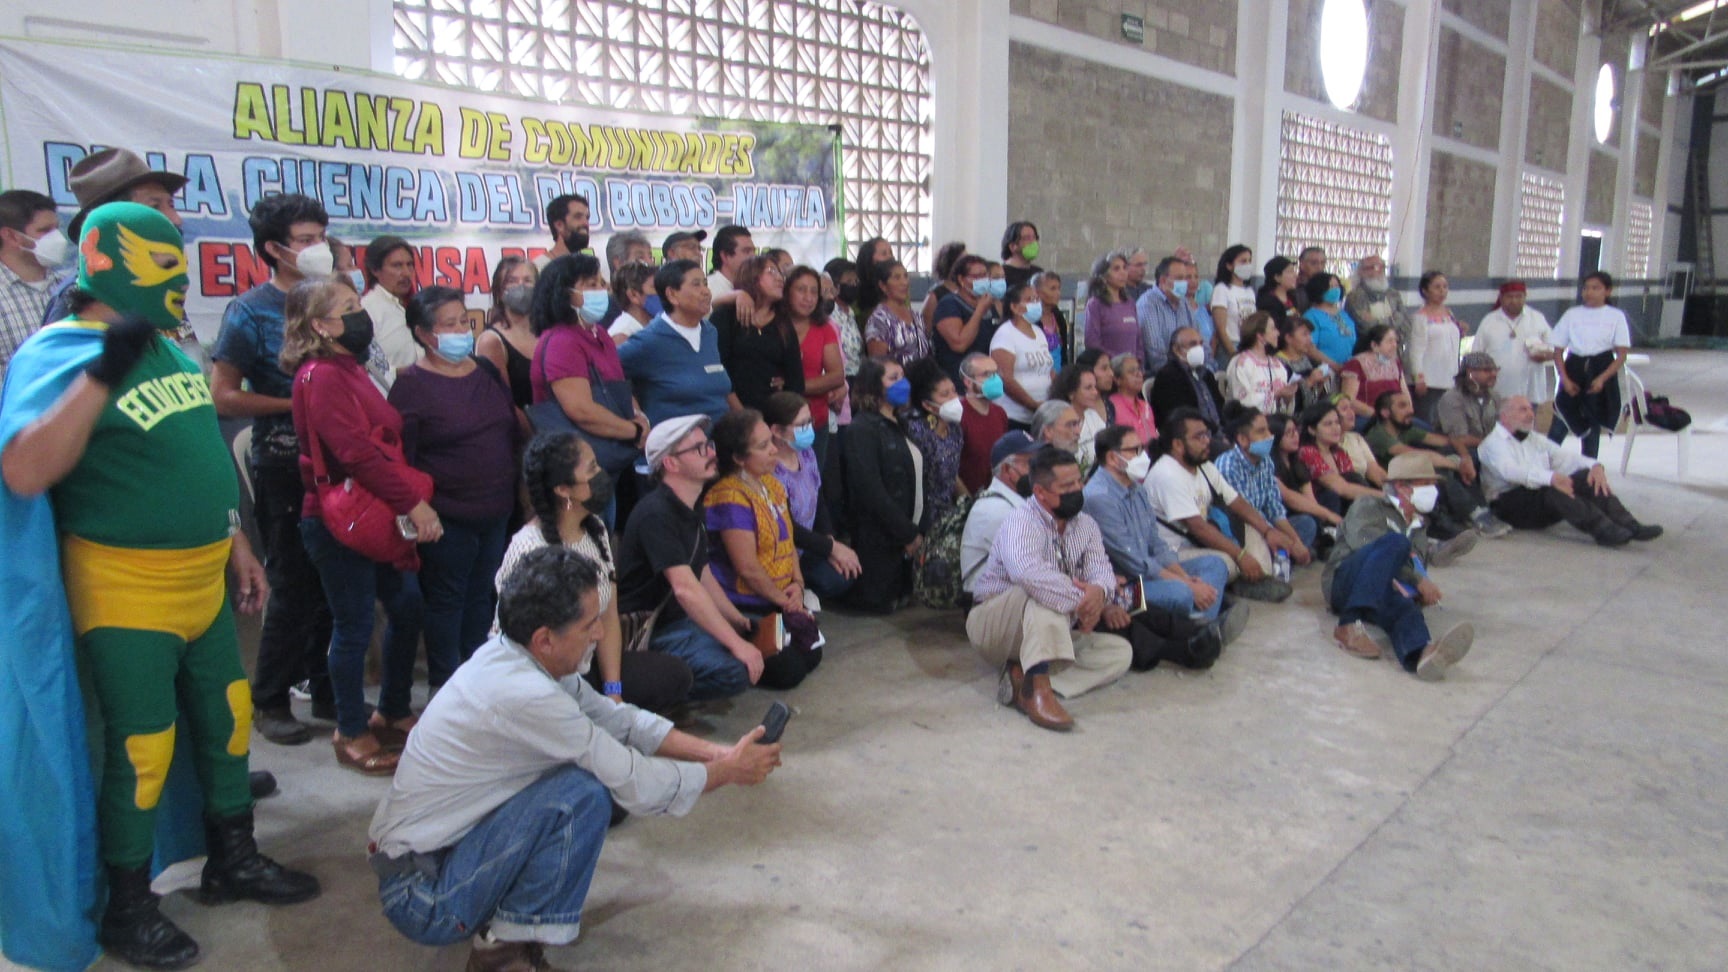 México: Encuentro de defensoras y defensores del territorio y la vida digna